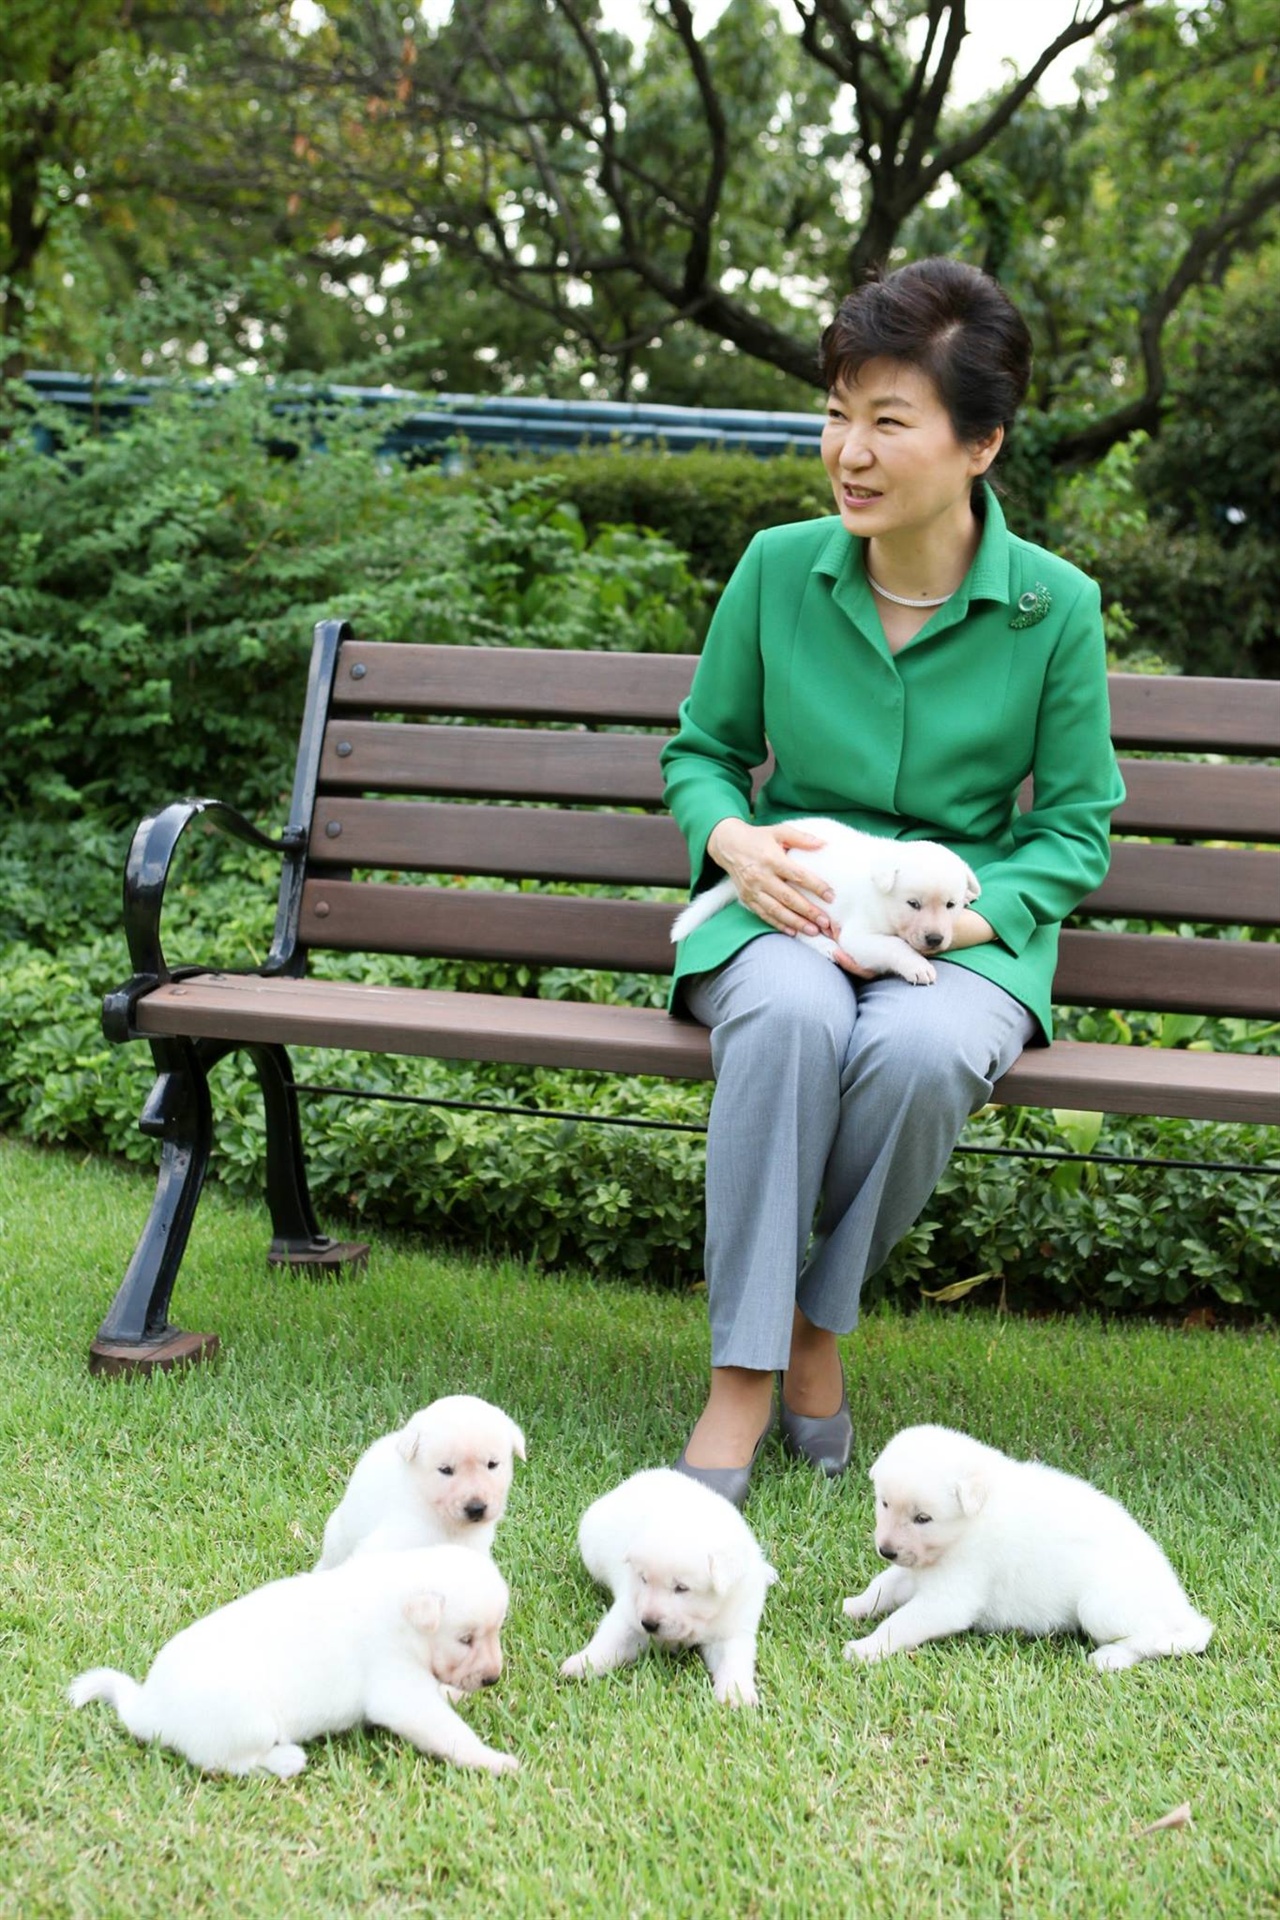 박근혜 대통령이 2015년 9월 페이스북에 올린 사진. 당시 박근혜 대통령과 함께 사진을 찍은 5마리의 개는 입양되었으나, 여전히 청와대에는 9마리의 진돗개가 남아있다.